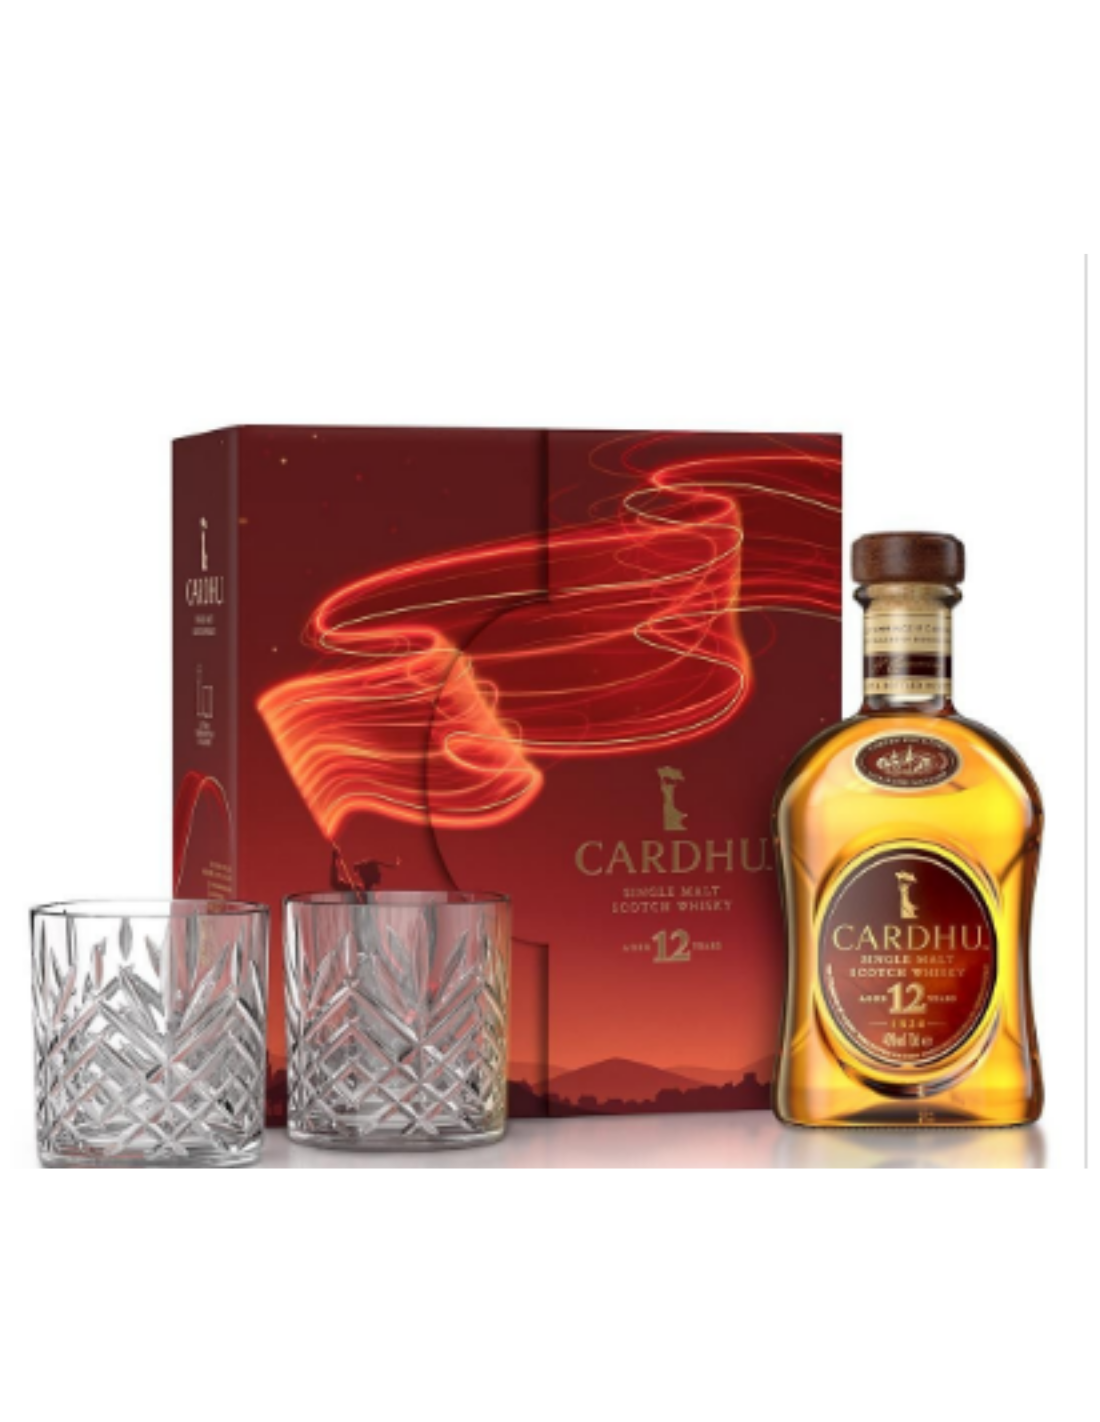 Whisky Cardhu 12 ani + 2 Pahare 0.7L, 12 ani, 40% alc., Scotia